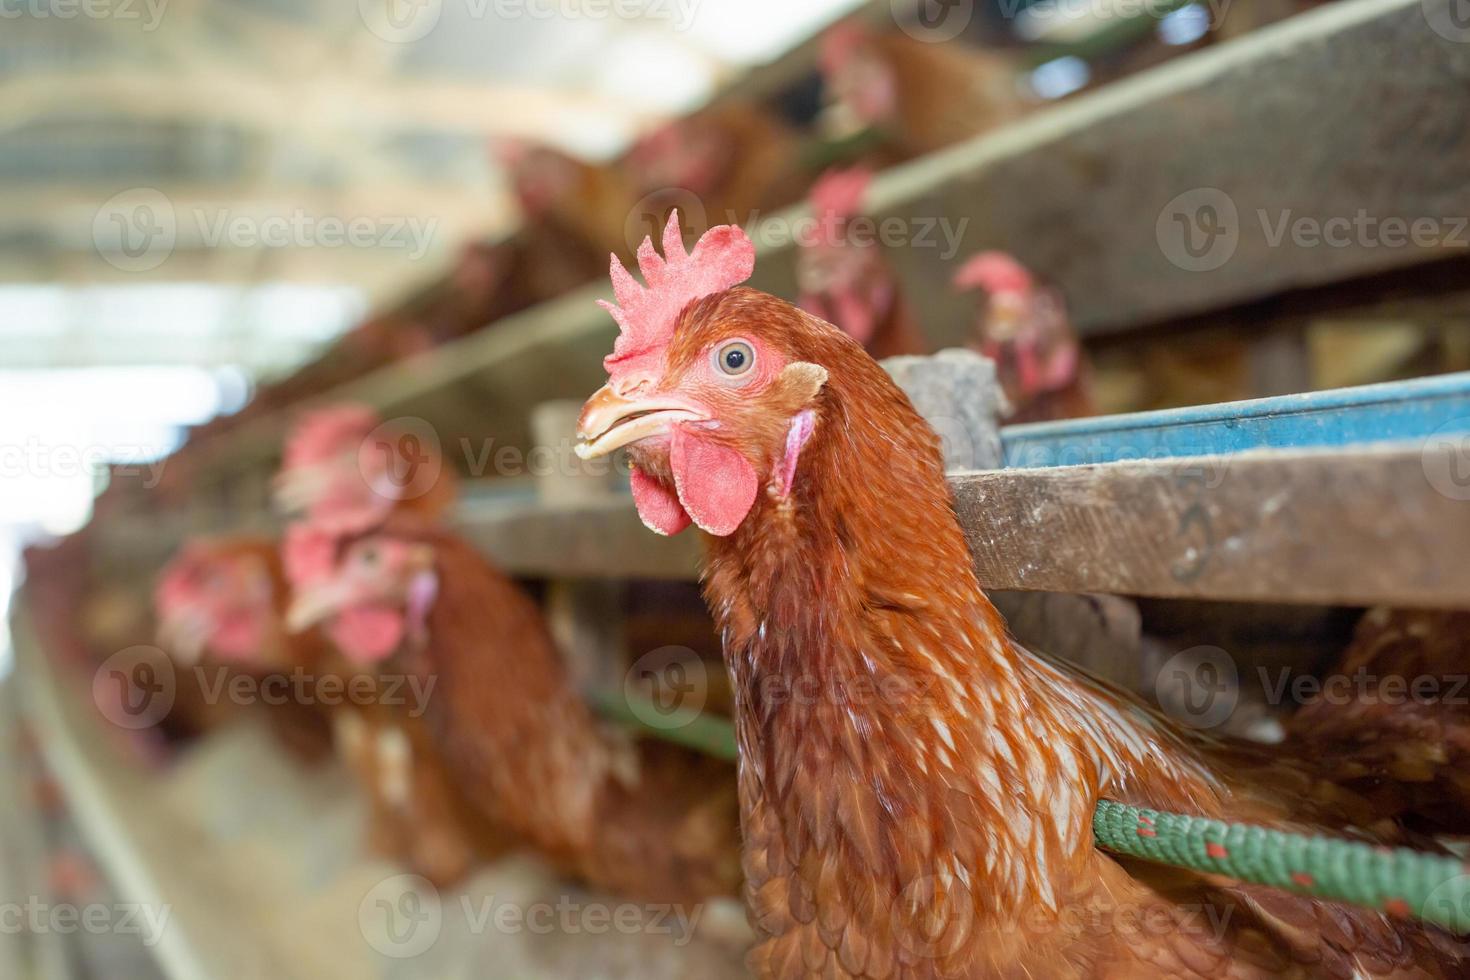 kippen in kooi op boerderij, kip eten in boskooi op boerderij. foto